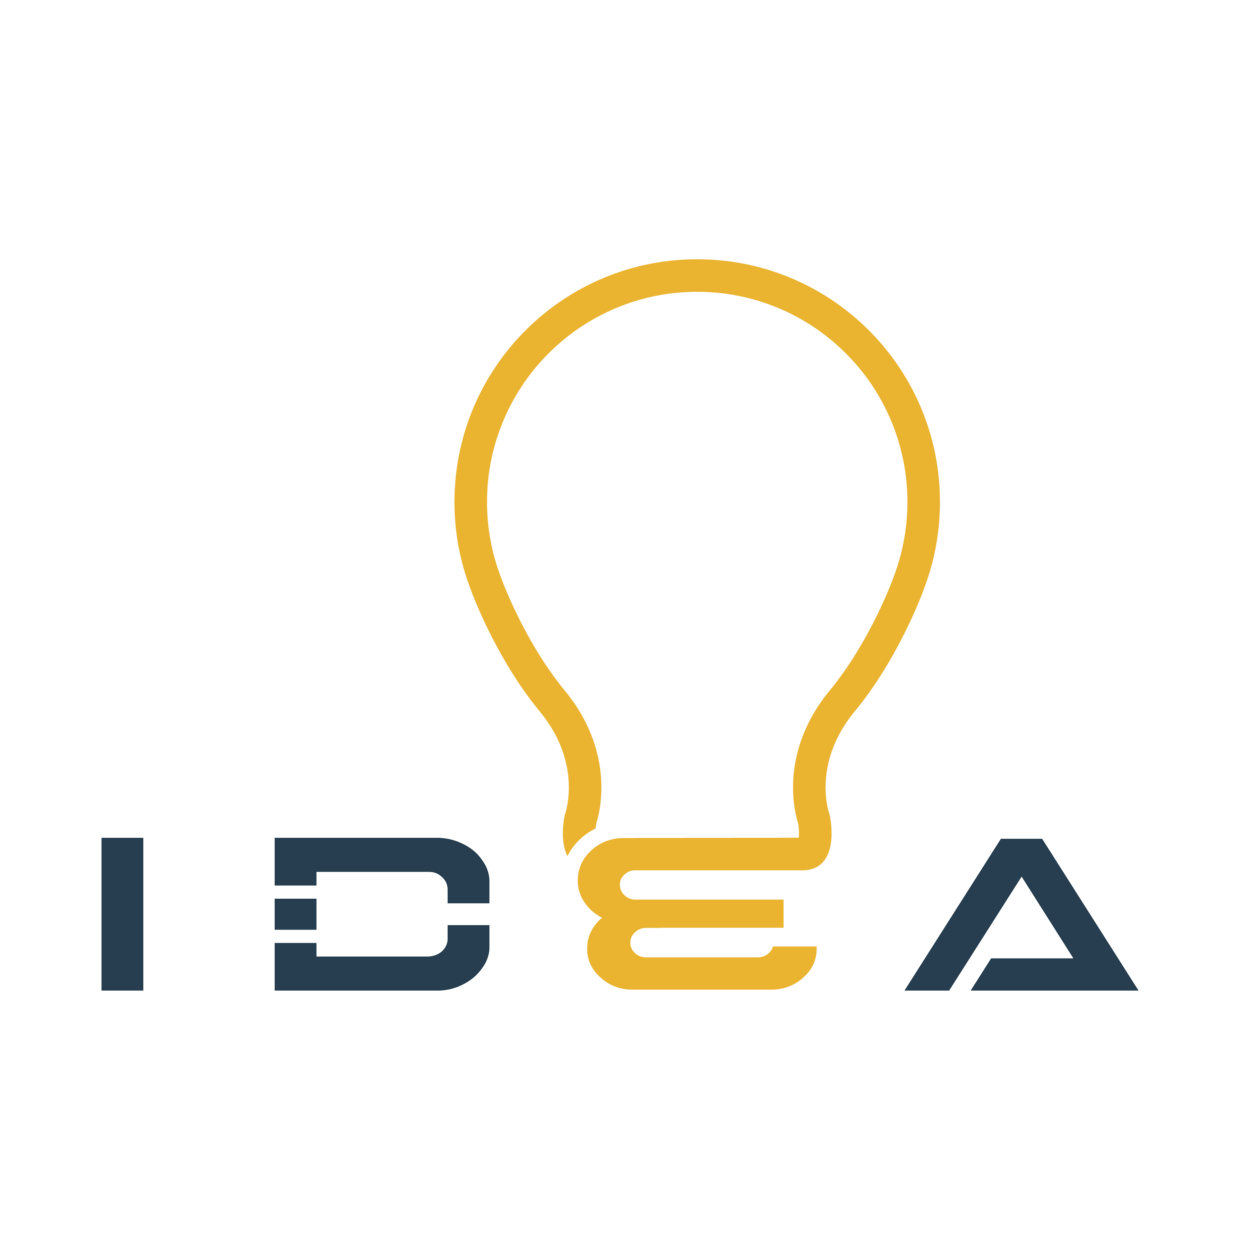 IDEA Product Design